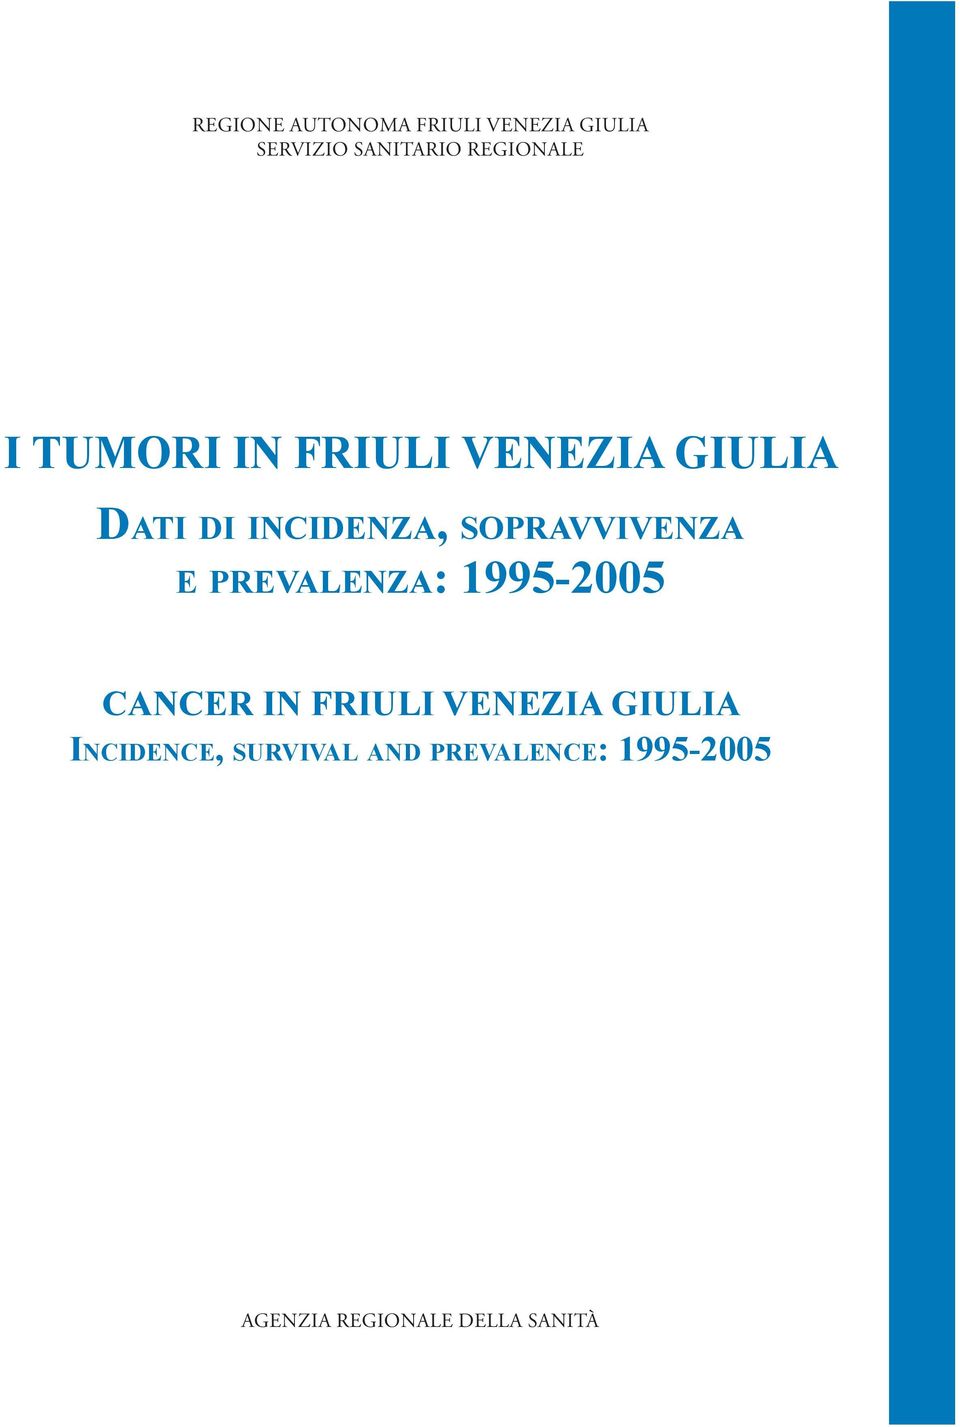 SOPRAVVIVENZA E PREVALENZA: 1995-2005 CANCER IN FRIULI VENEZIA